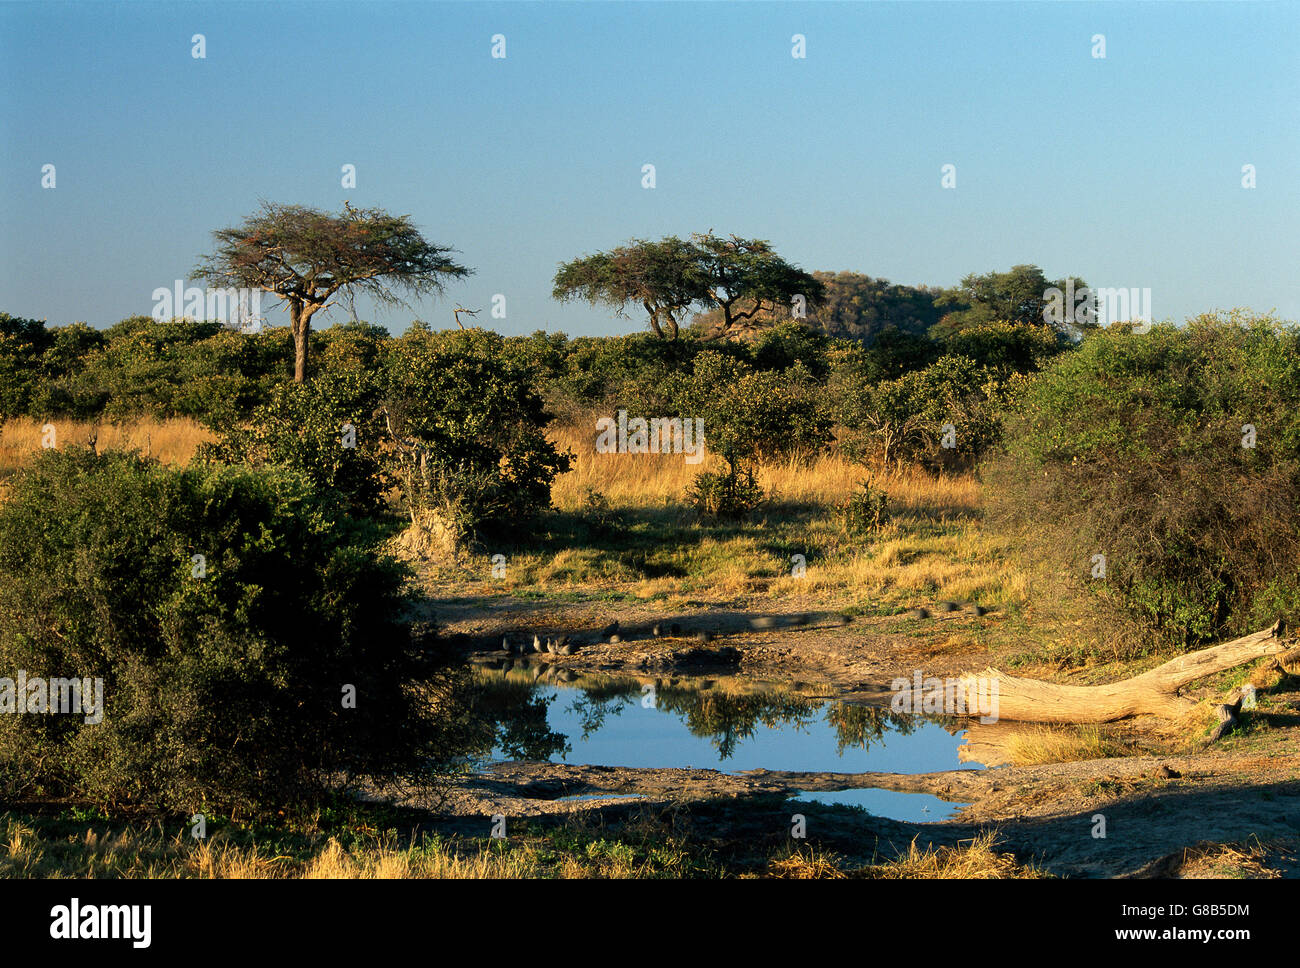 Savuti, Botswana Stock Photo